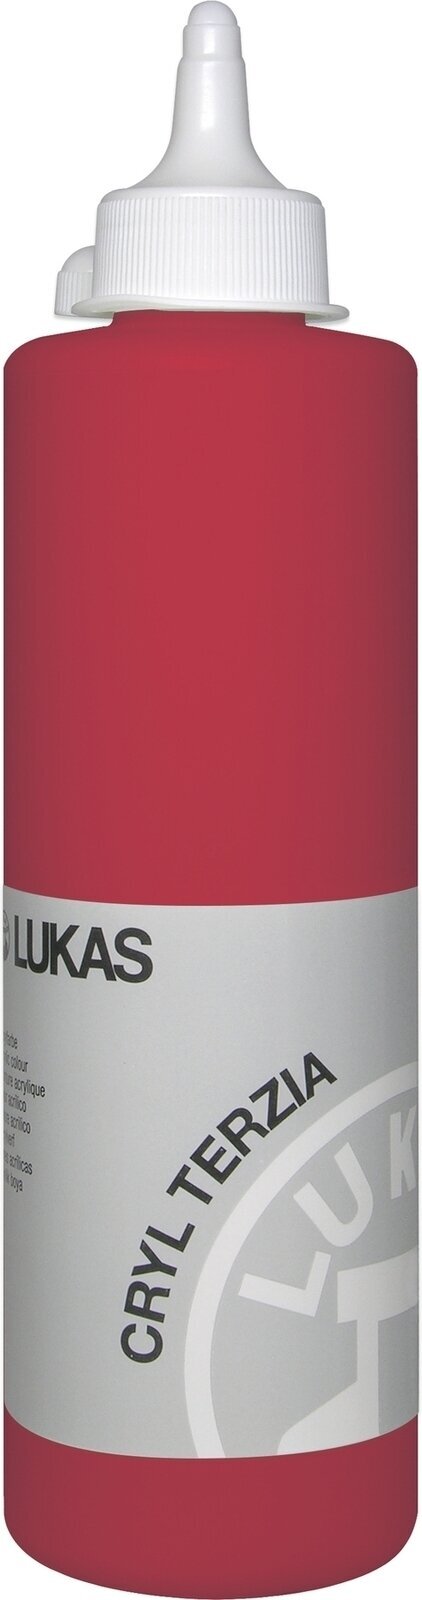 Akrylová barva Lukas Cryl Terzia Akrylová barva 500 ml Cadmium Red Deep Hue